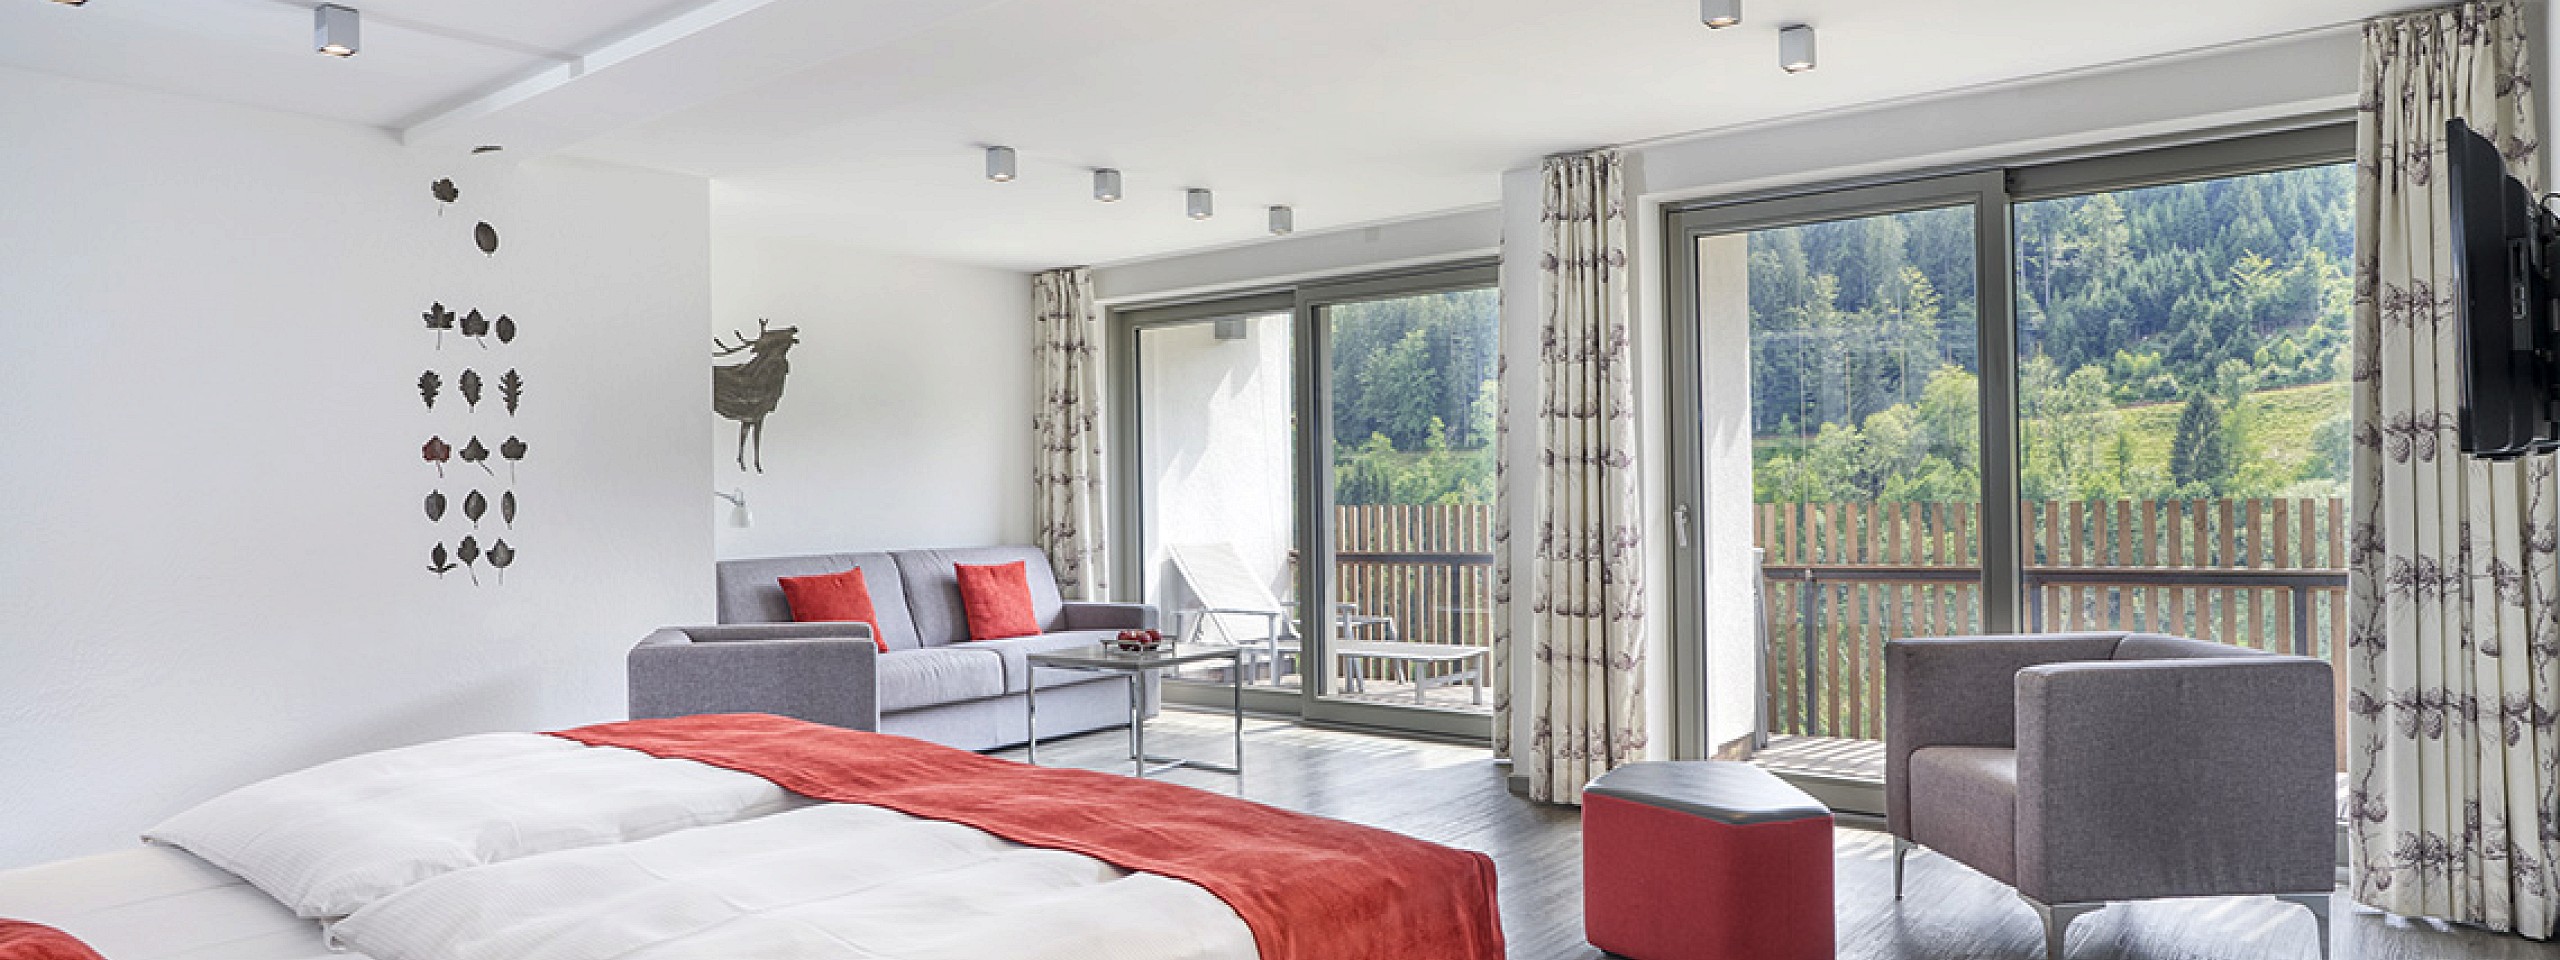 Bett mit zwei gepolsterten Stühlen sowie einem Schreibtischstuhl im Hotelzimmer im Schwarzwald.